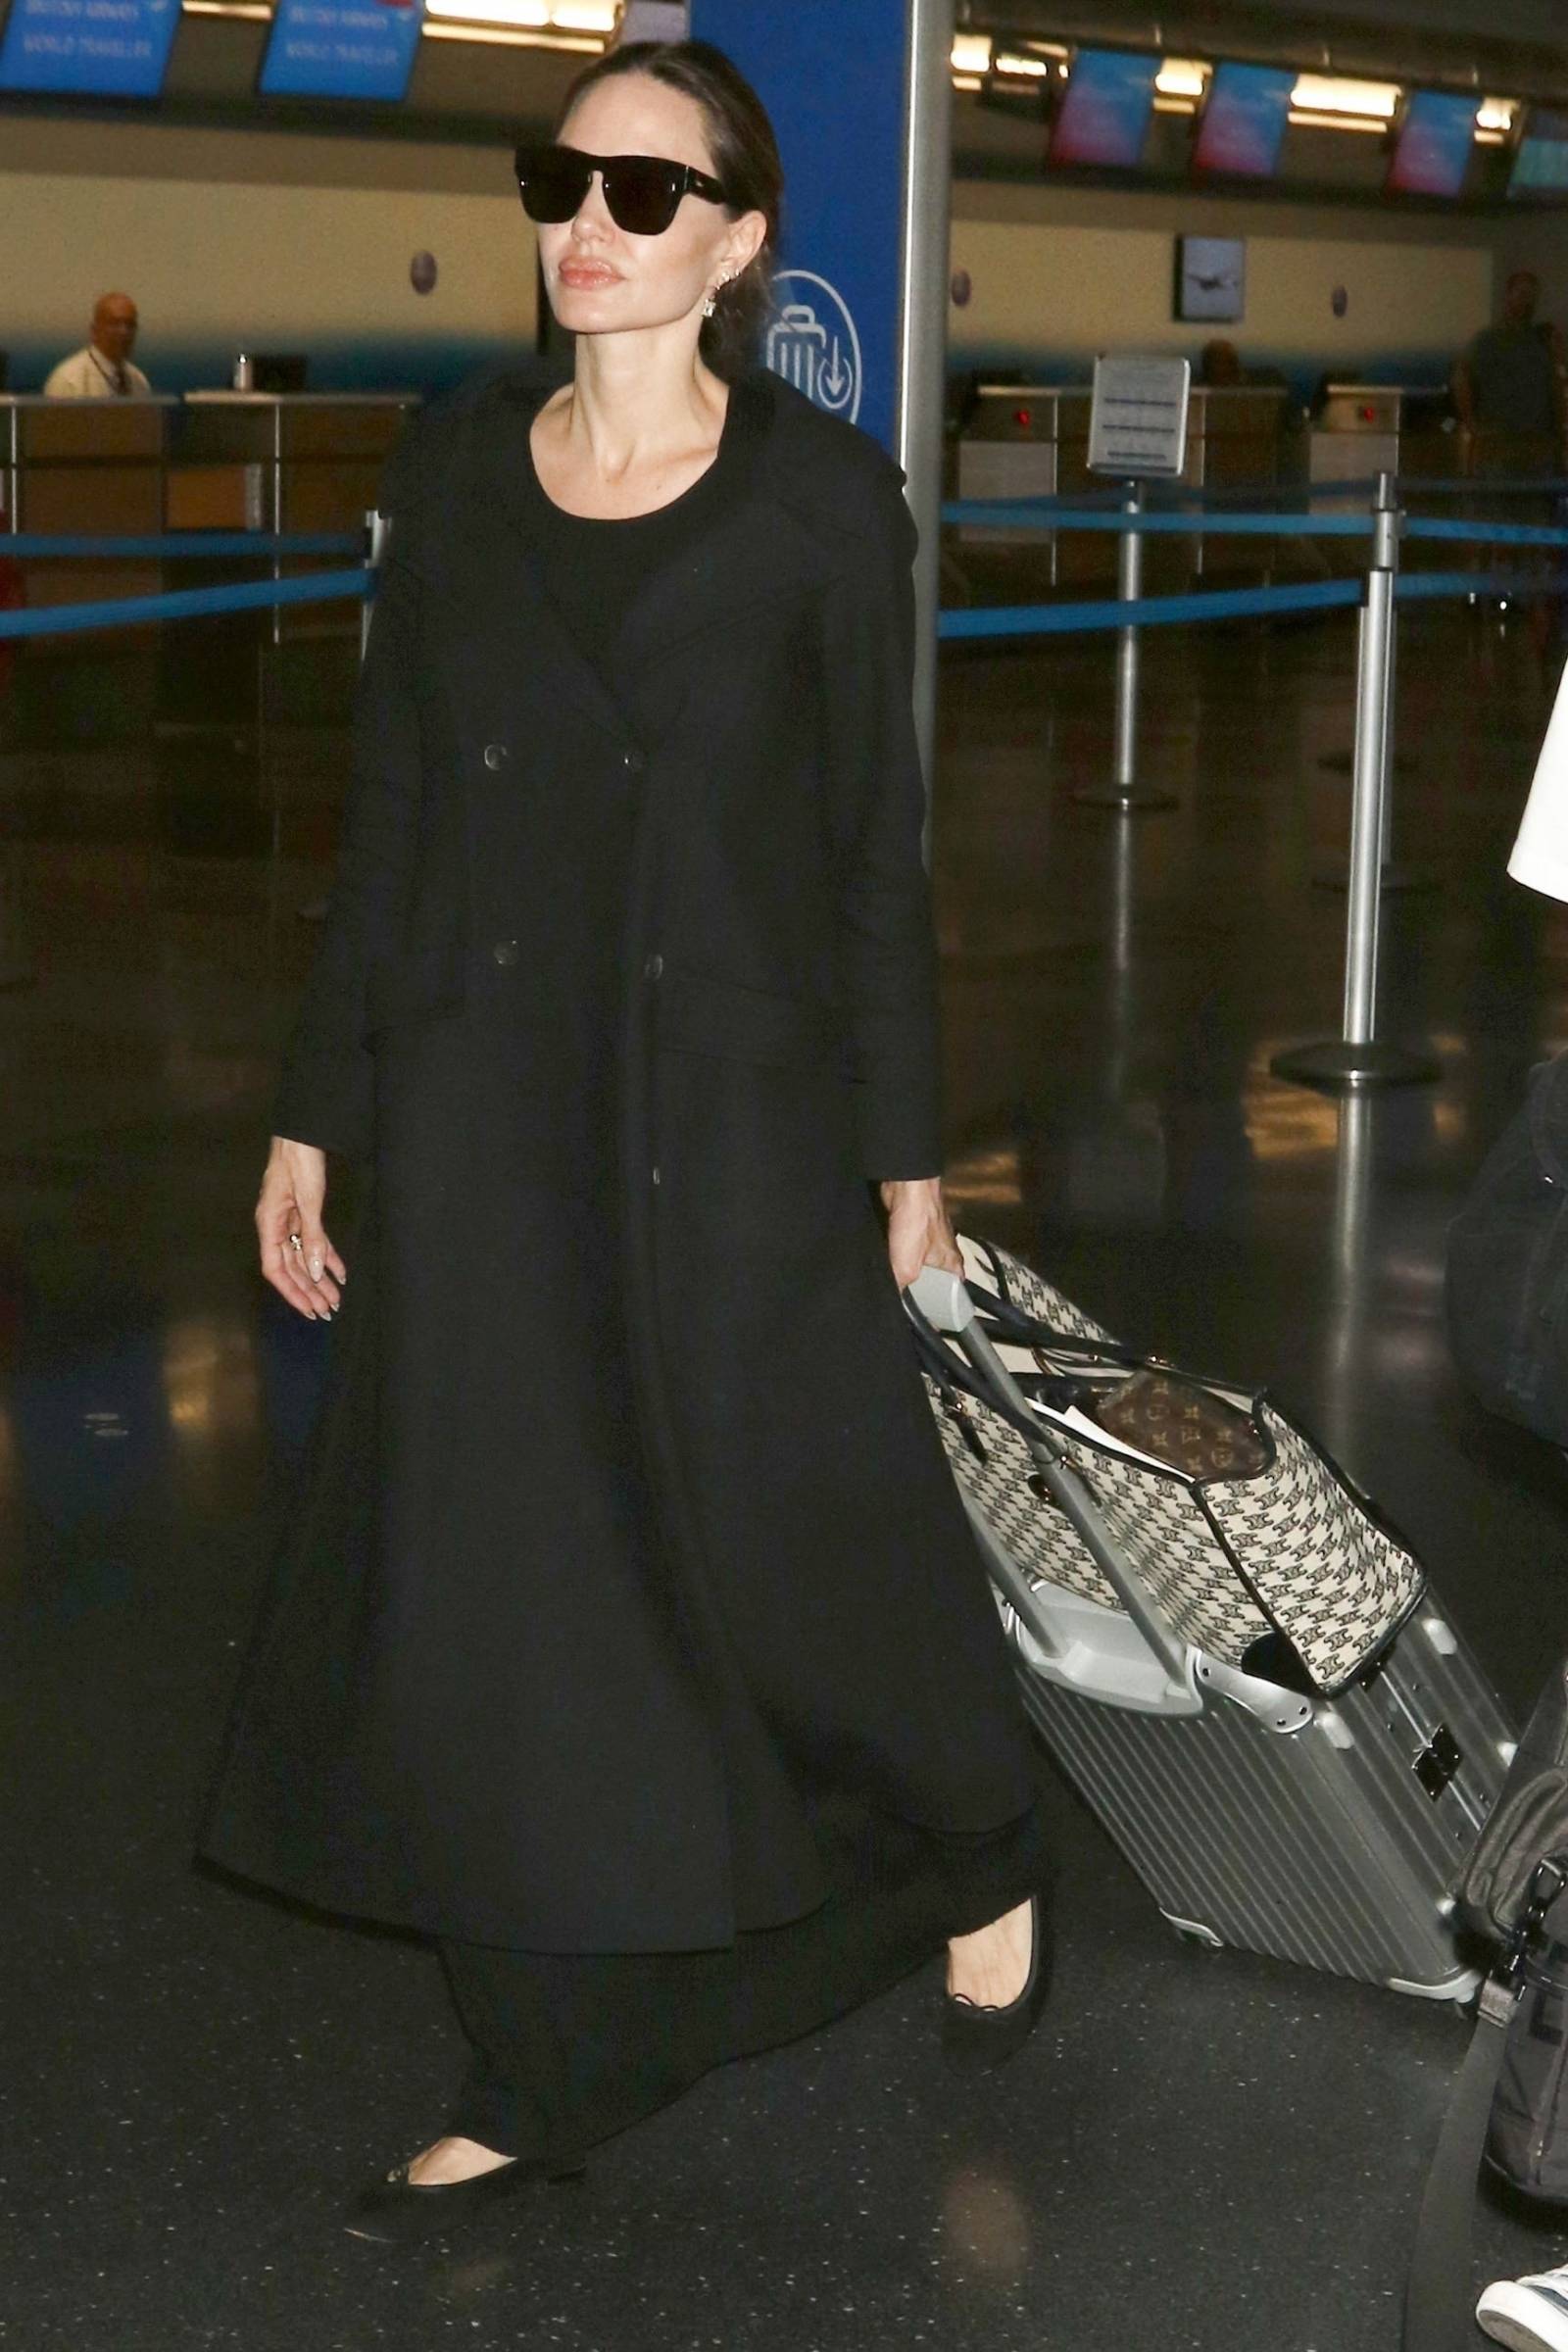 Lotniskowy styl Angeliny Jolie to lekcja wygody i elegancji (Fot. Backgrid/East News)